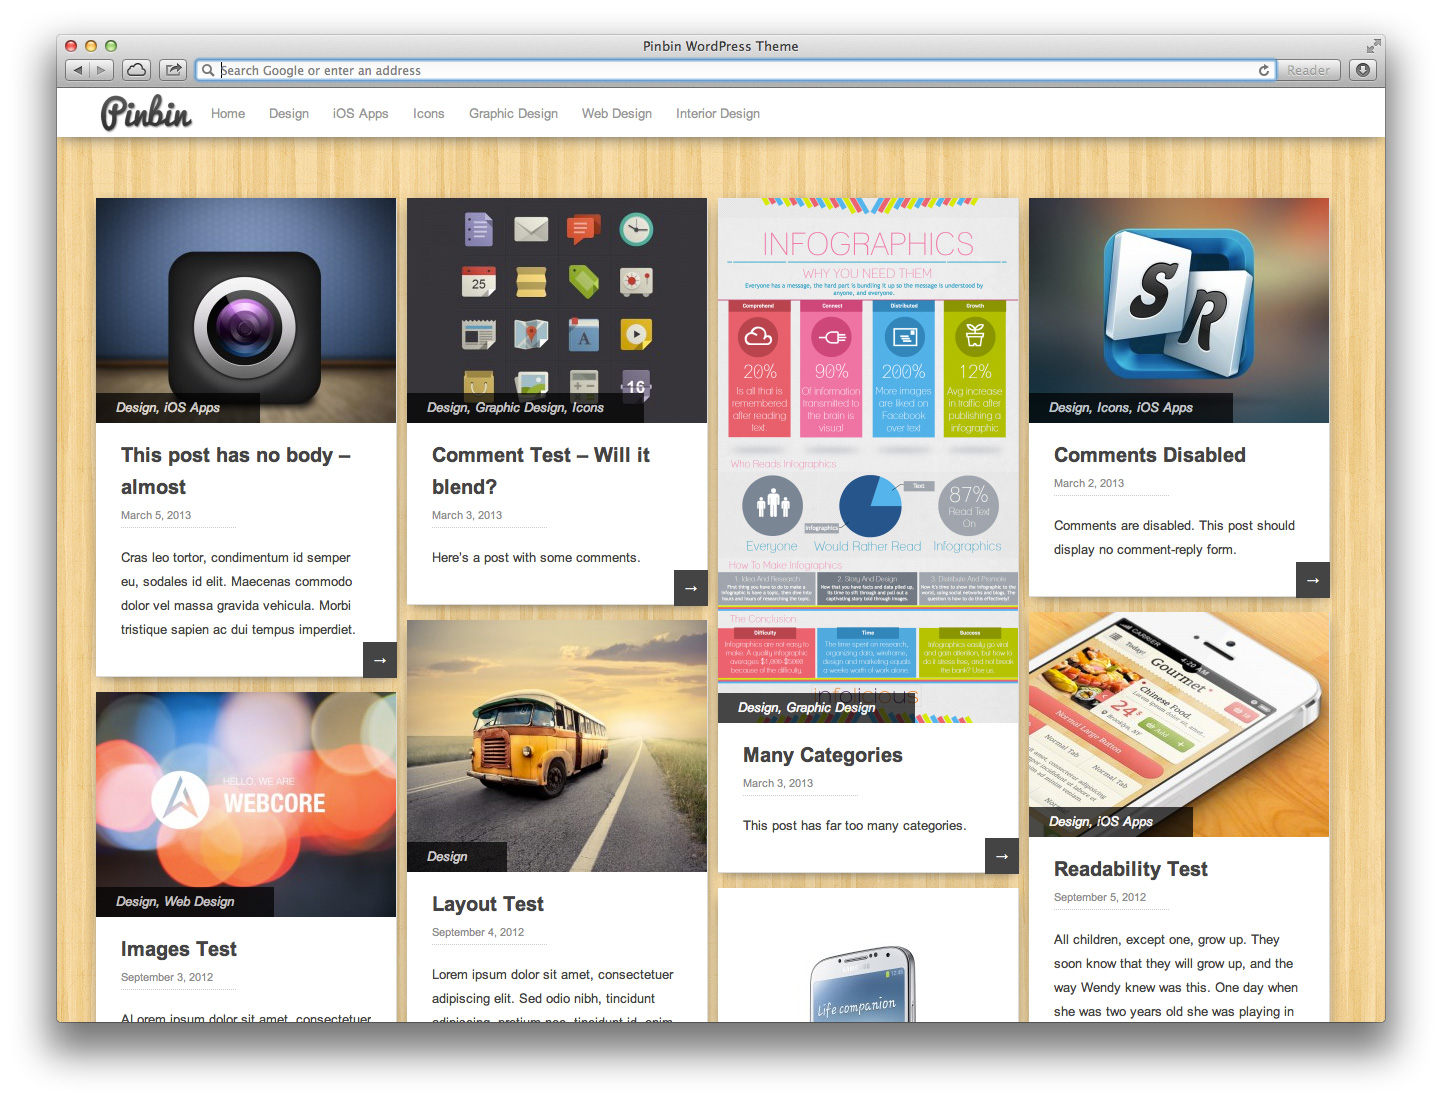 Pinbin Theme on Desktop web Broswer